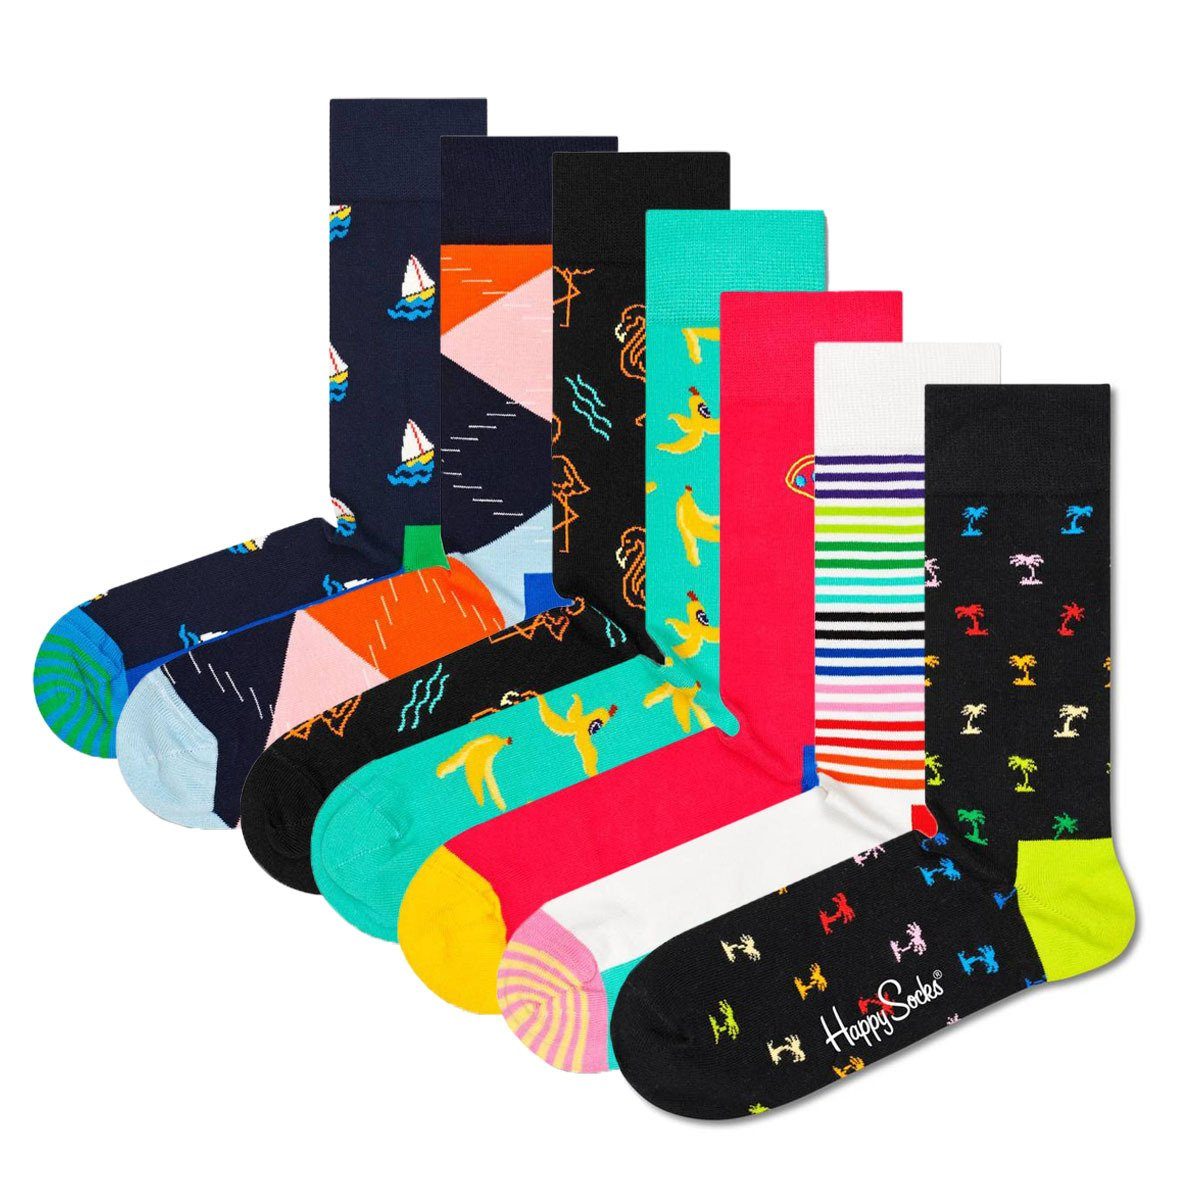 Wäsche/Bademode Socken Happy Socks Kurzsocken Unisex Socken, 7er Pack, Geschenkbox